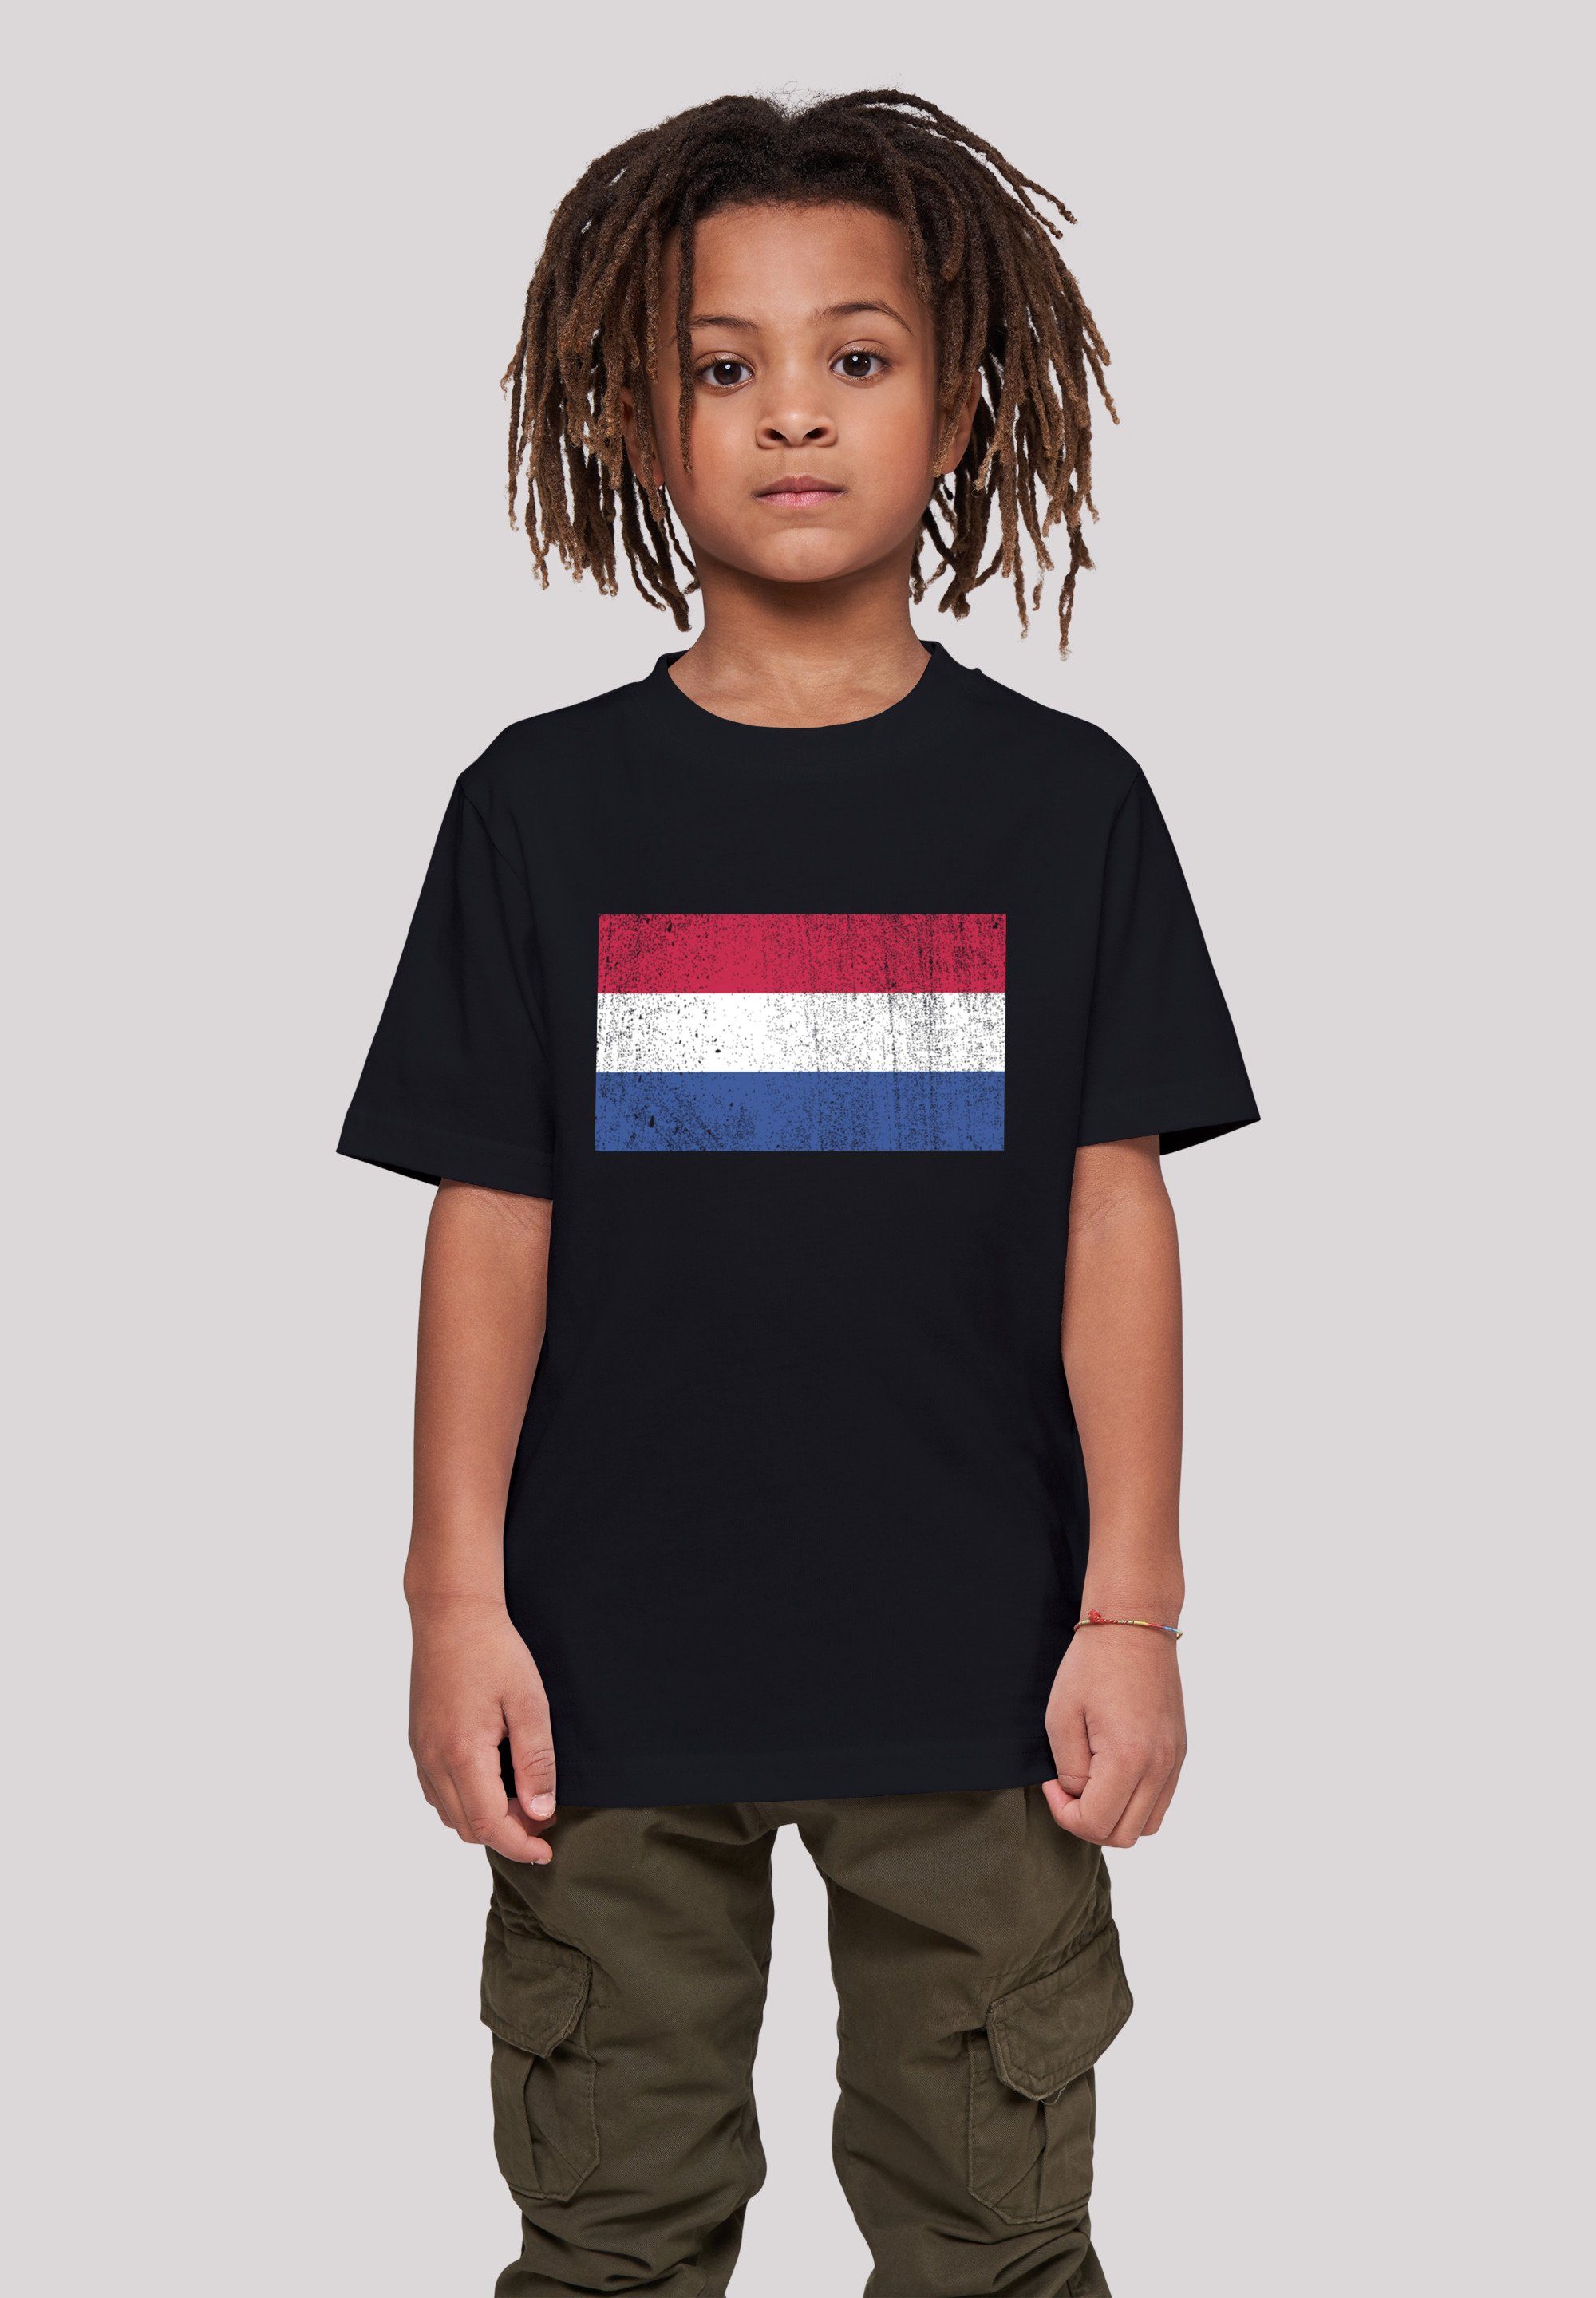 F4NT4STIC T-Shirt Netherlands Flagge 145 Das NIederlande groß ist Keine Größe 145/152 Angabe, Holland Model trägt cm distressed und